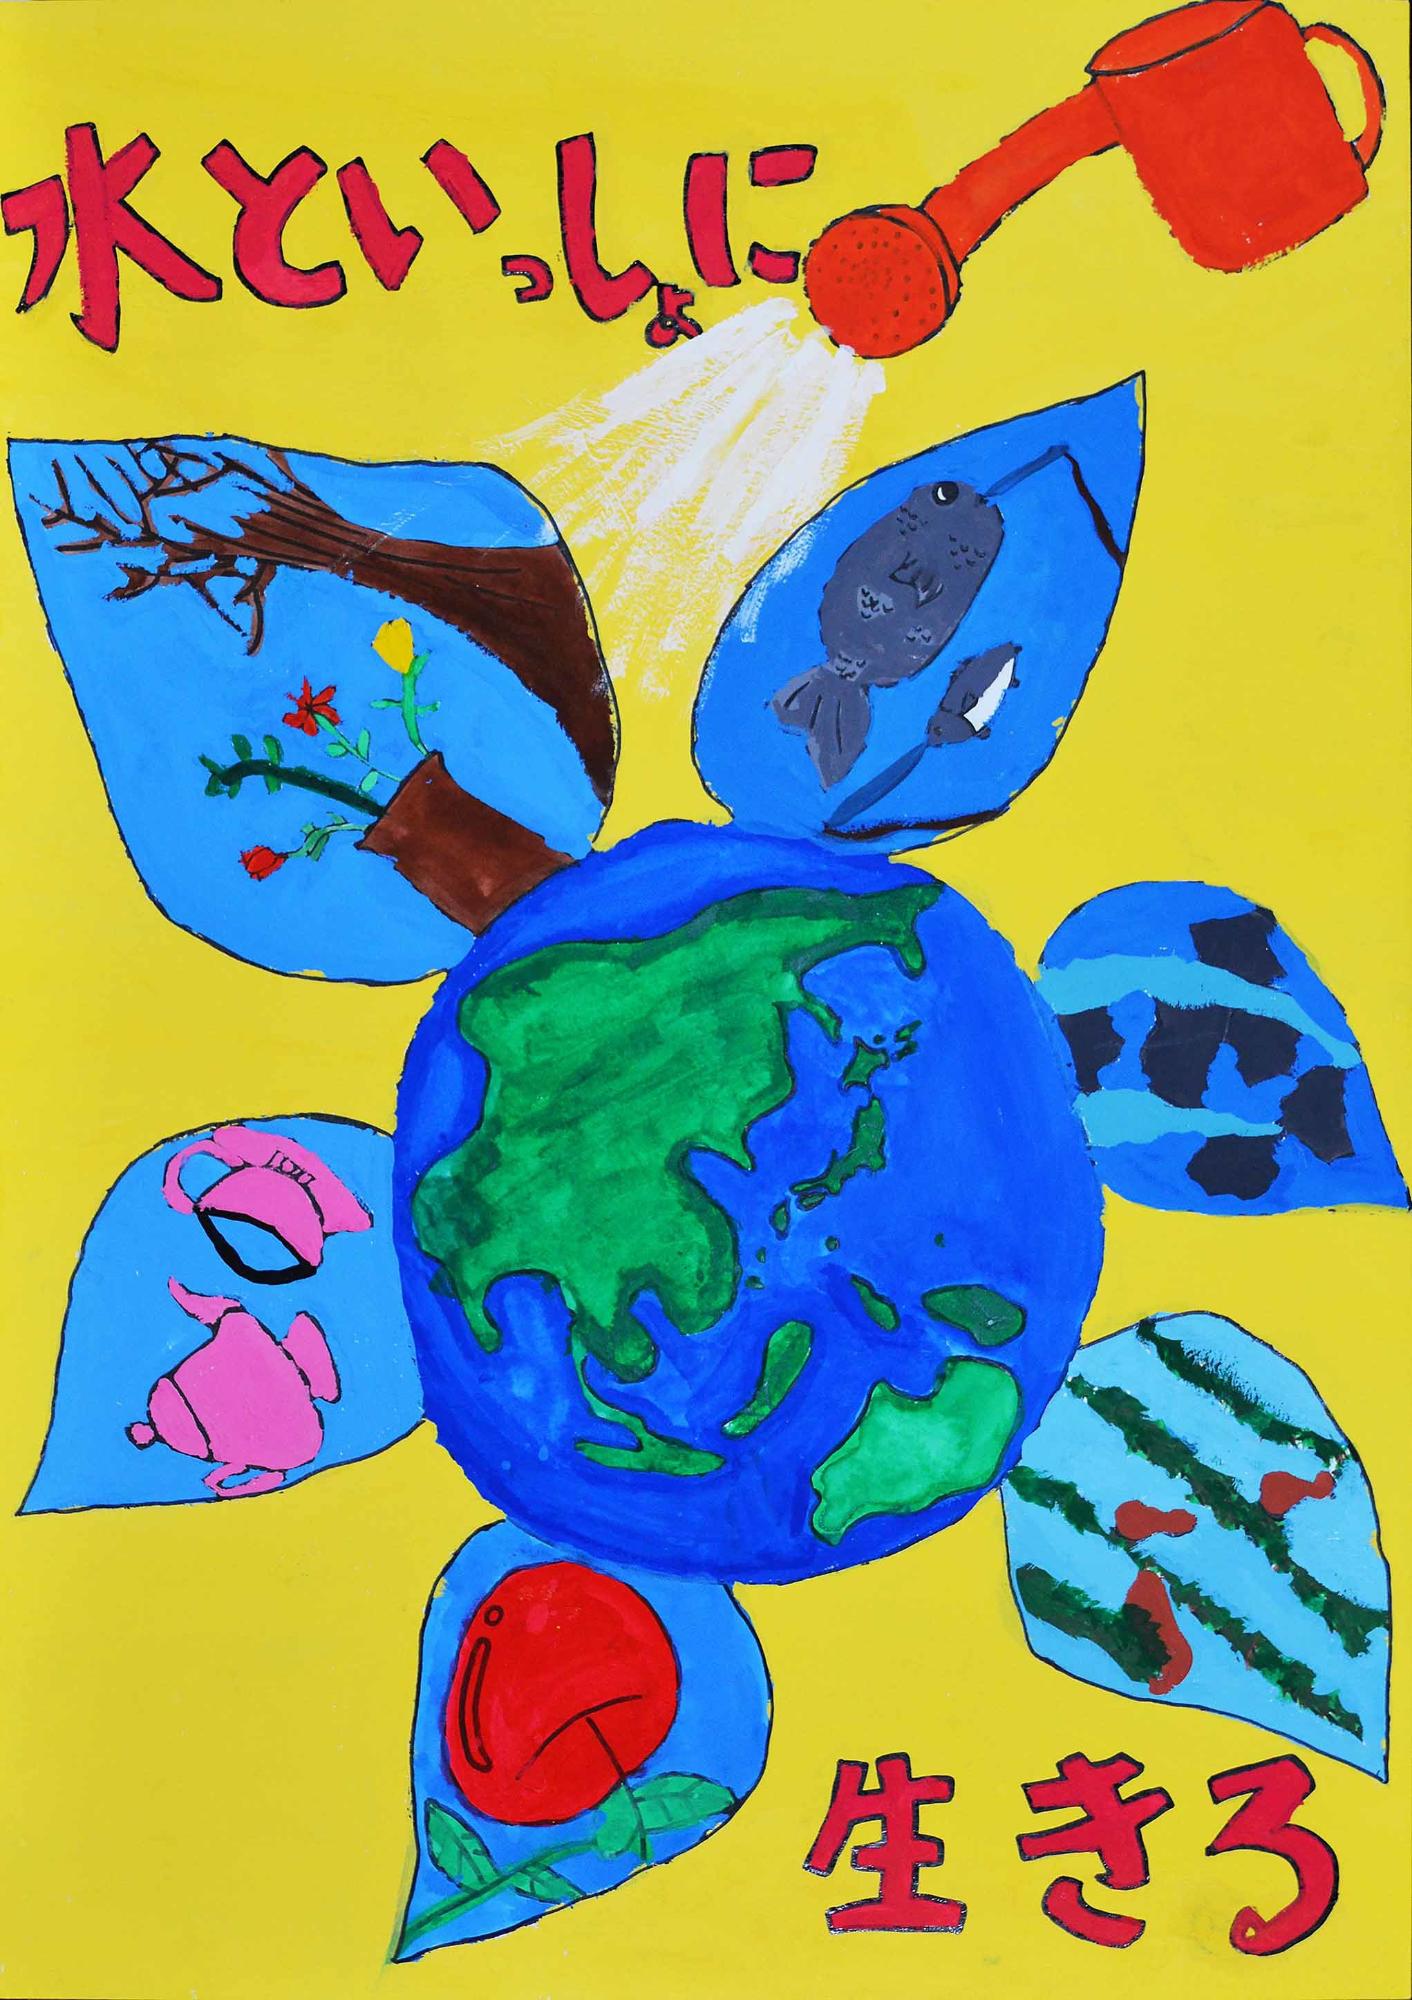 入選作品 西志津小学校 5年 渡邉あいみさん（水といっしょに生きる、地球の周りに黄や果物が描かれた花びらがついており、その地球にじょうろで水をかけている様子が描かれている）